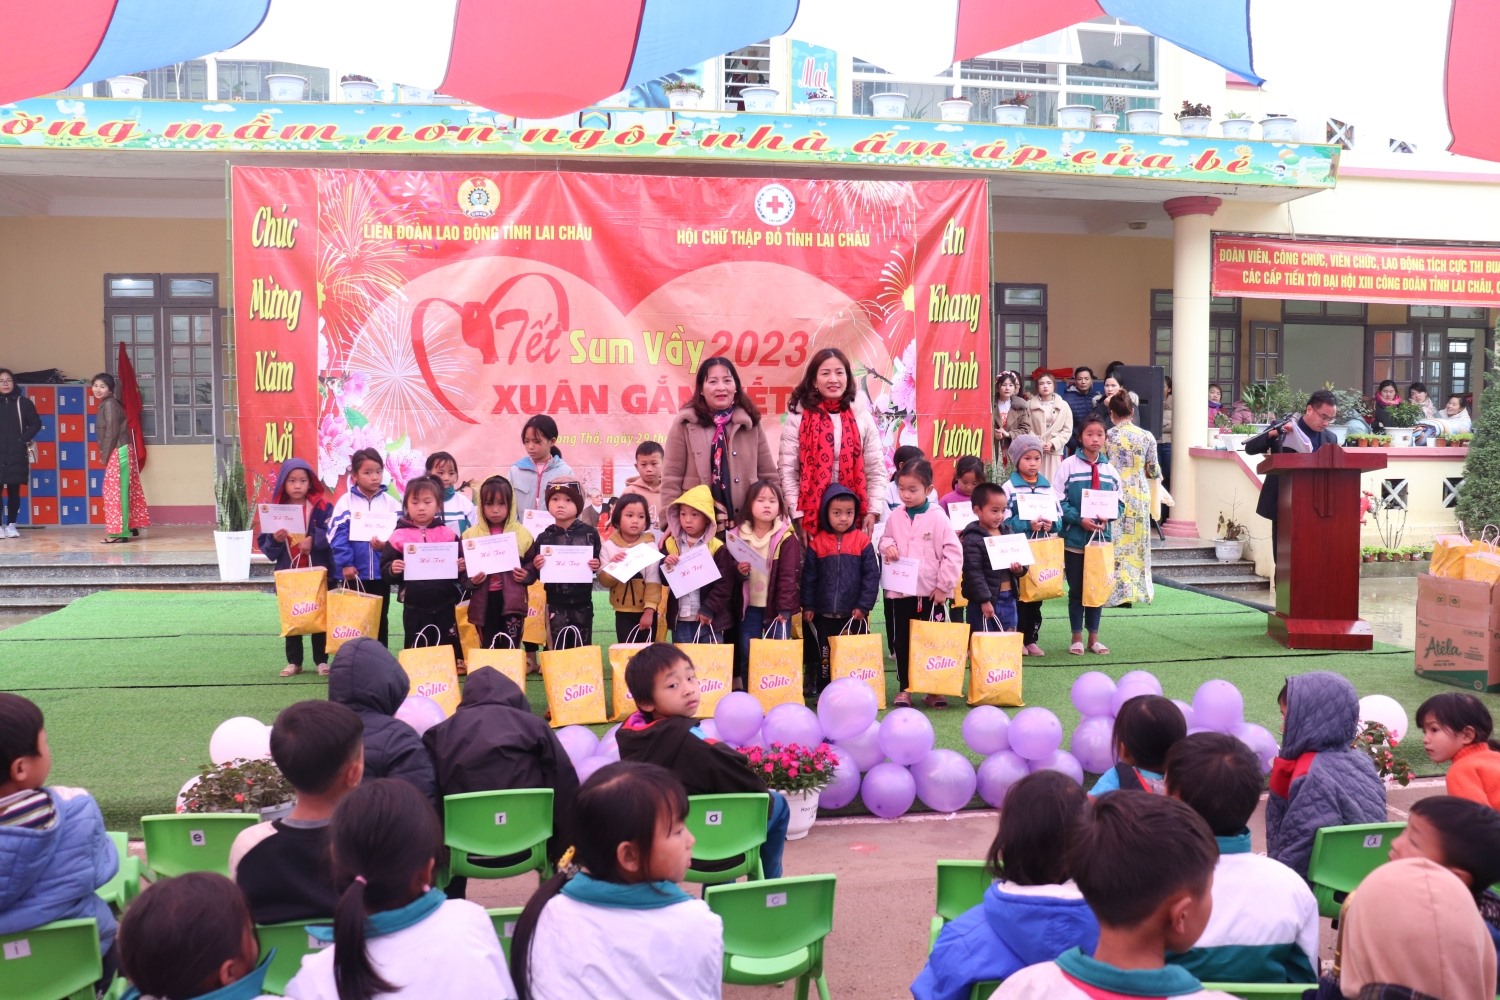 Lãnh đạo LĐLĐ tỉnh Lai Châu và UBND huyện Phong Thổ tặng quà cho các cháu học sinh có hoàn cảnh khó khăn. Ảnh: Xuân Nghĩa.